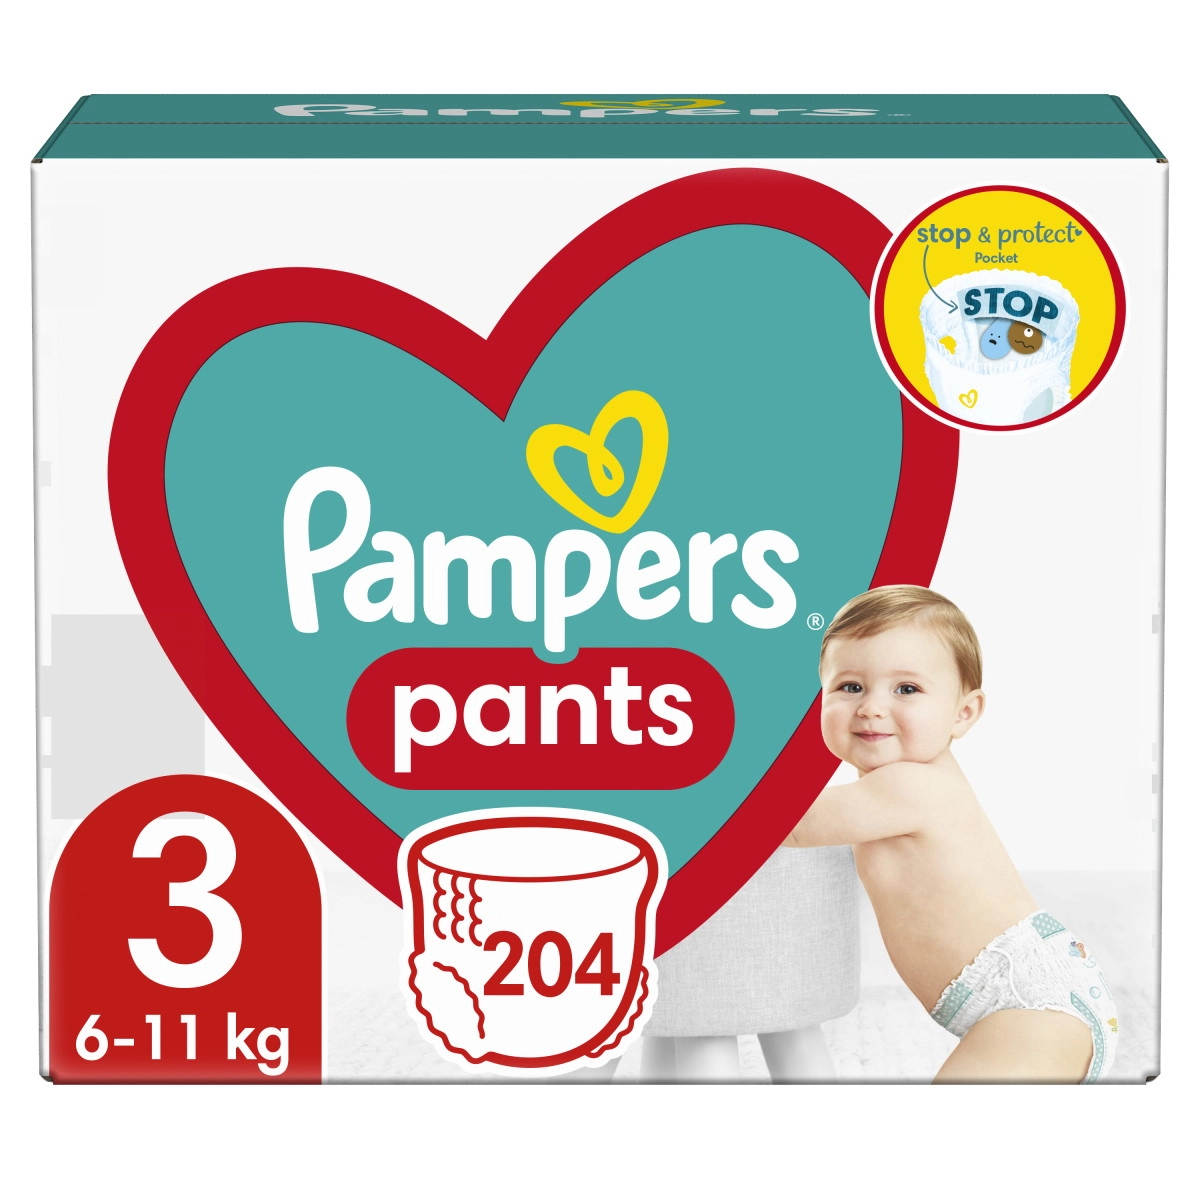 Pampers Pants Size 3 6-11kg 4pcs